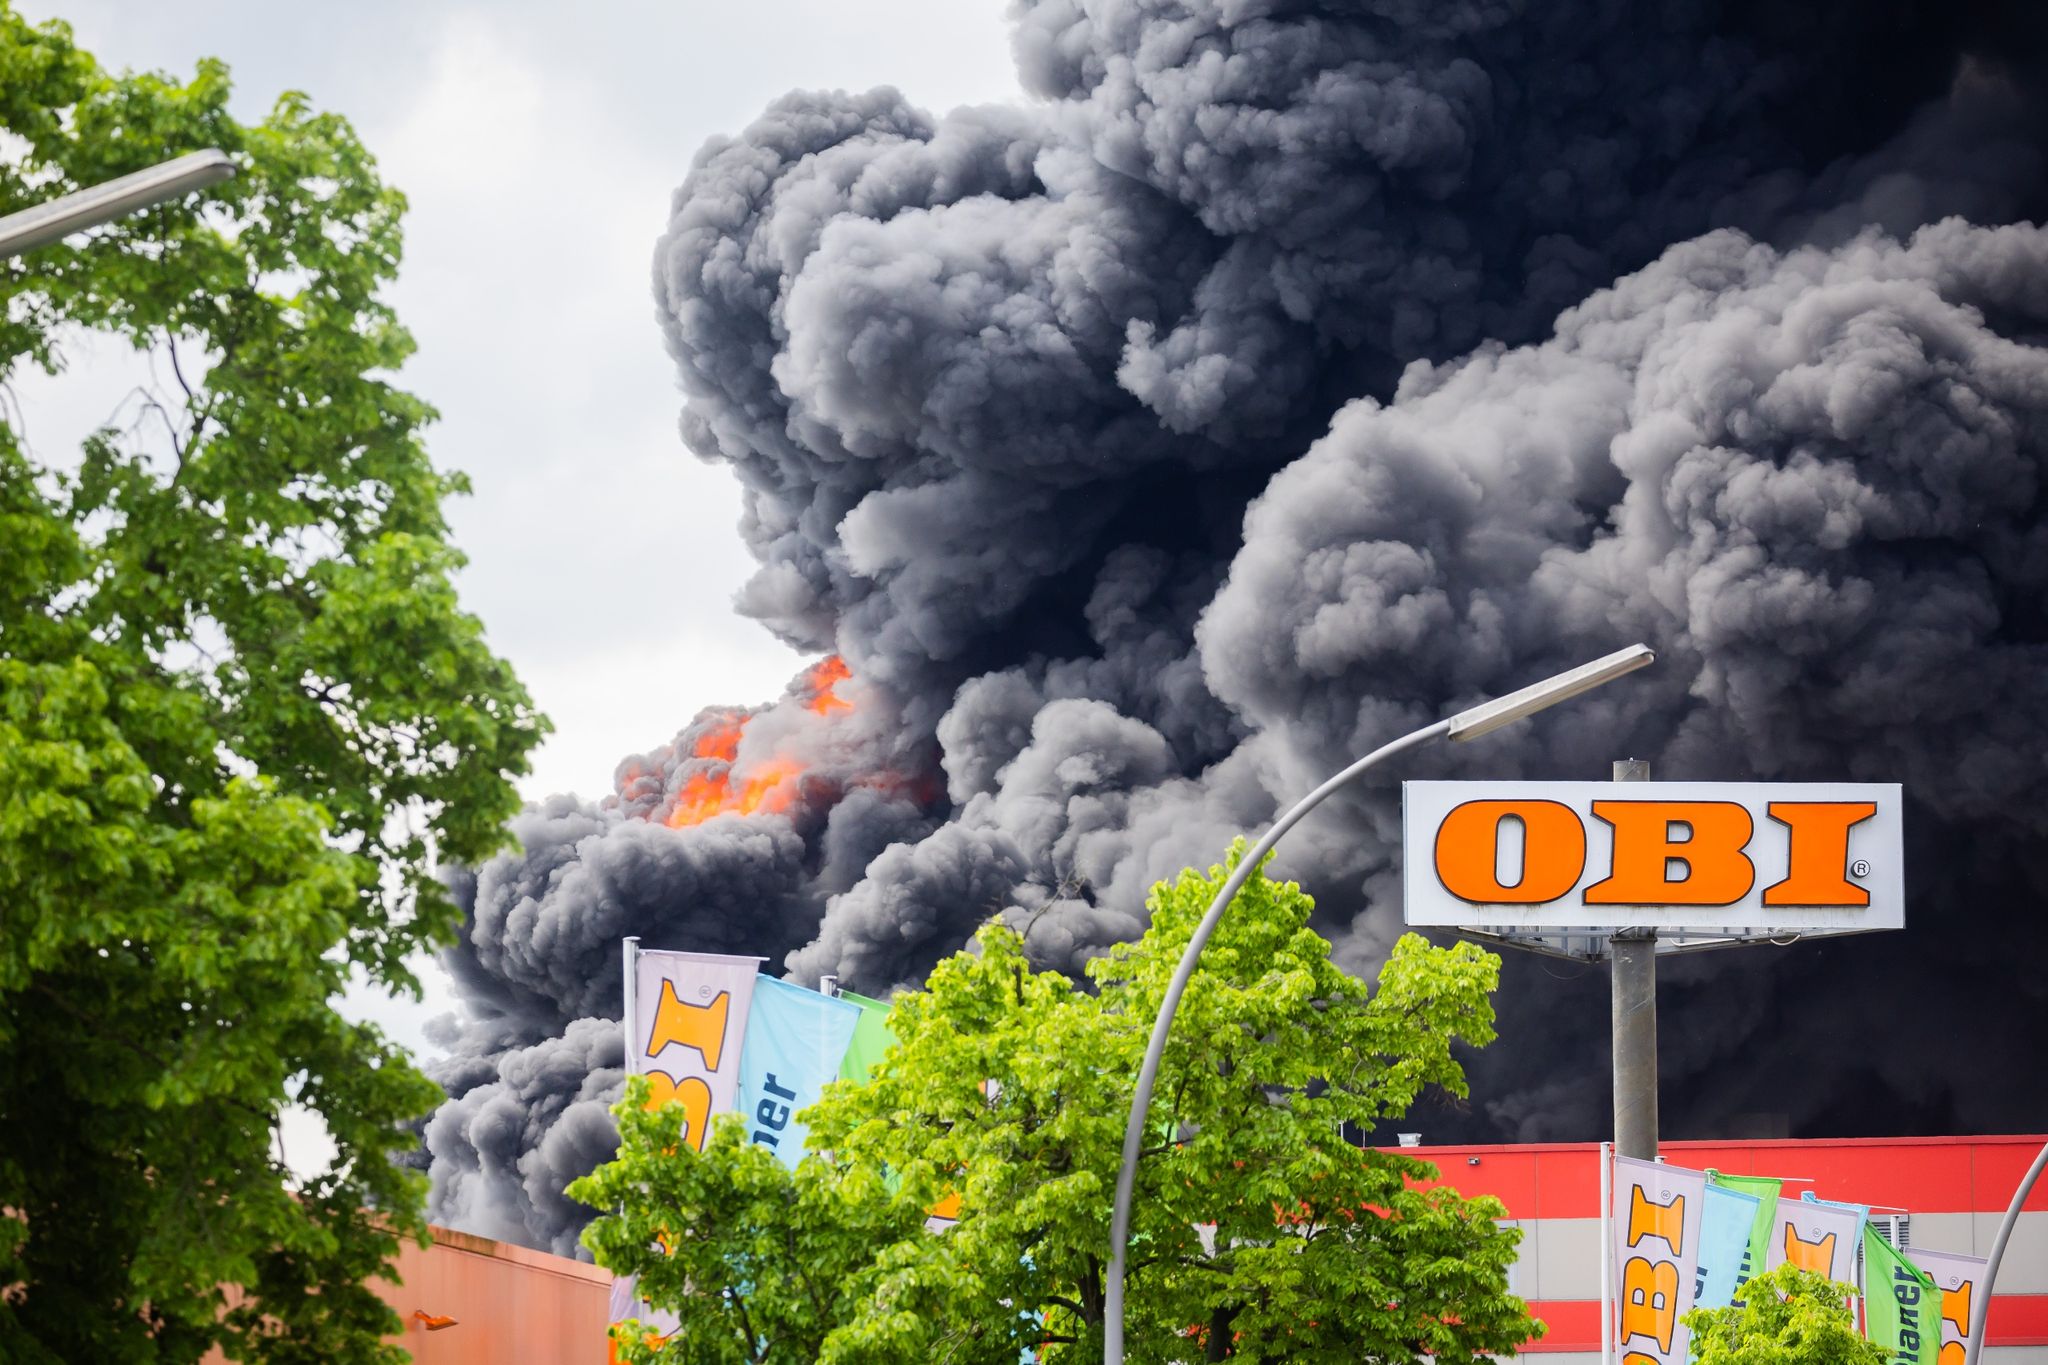 rauchwolke durch brand über berlin: warnung per handy-alarm